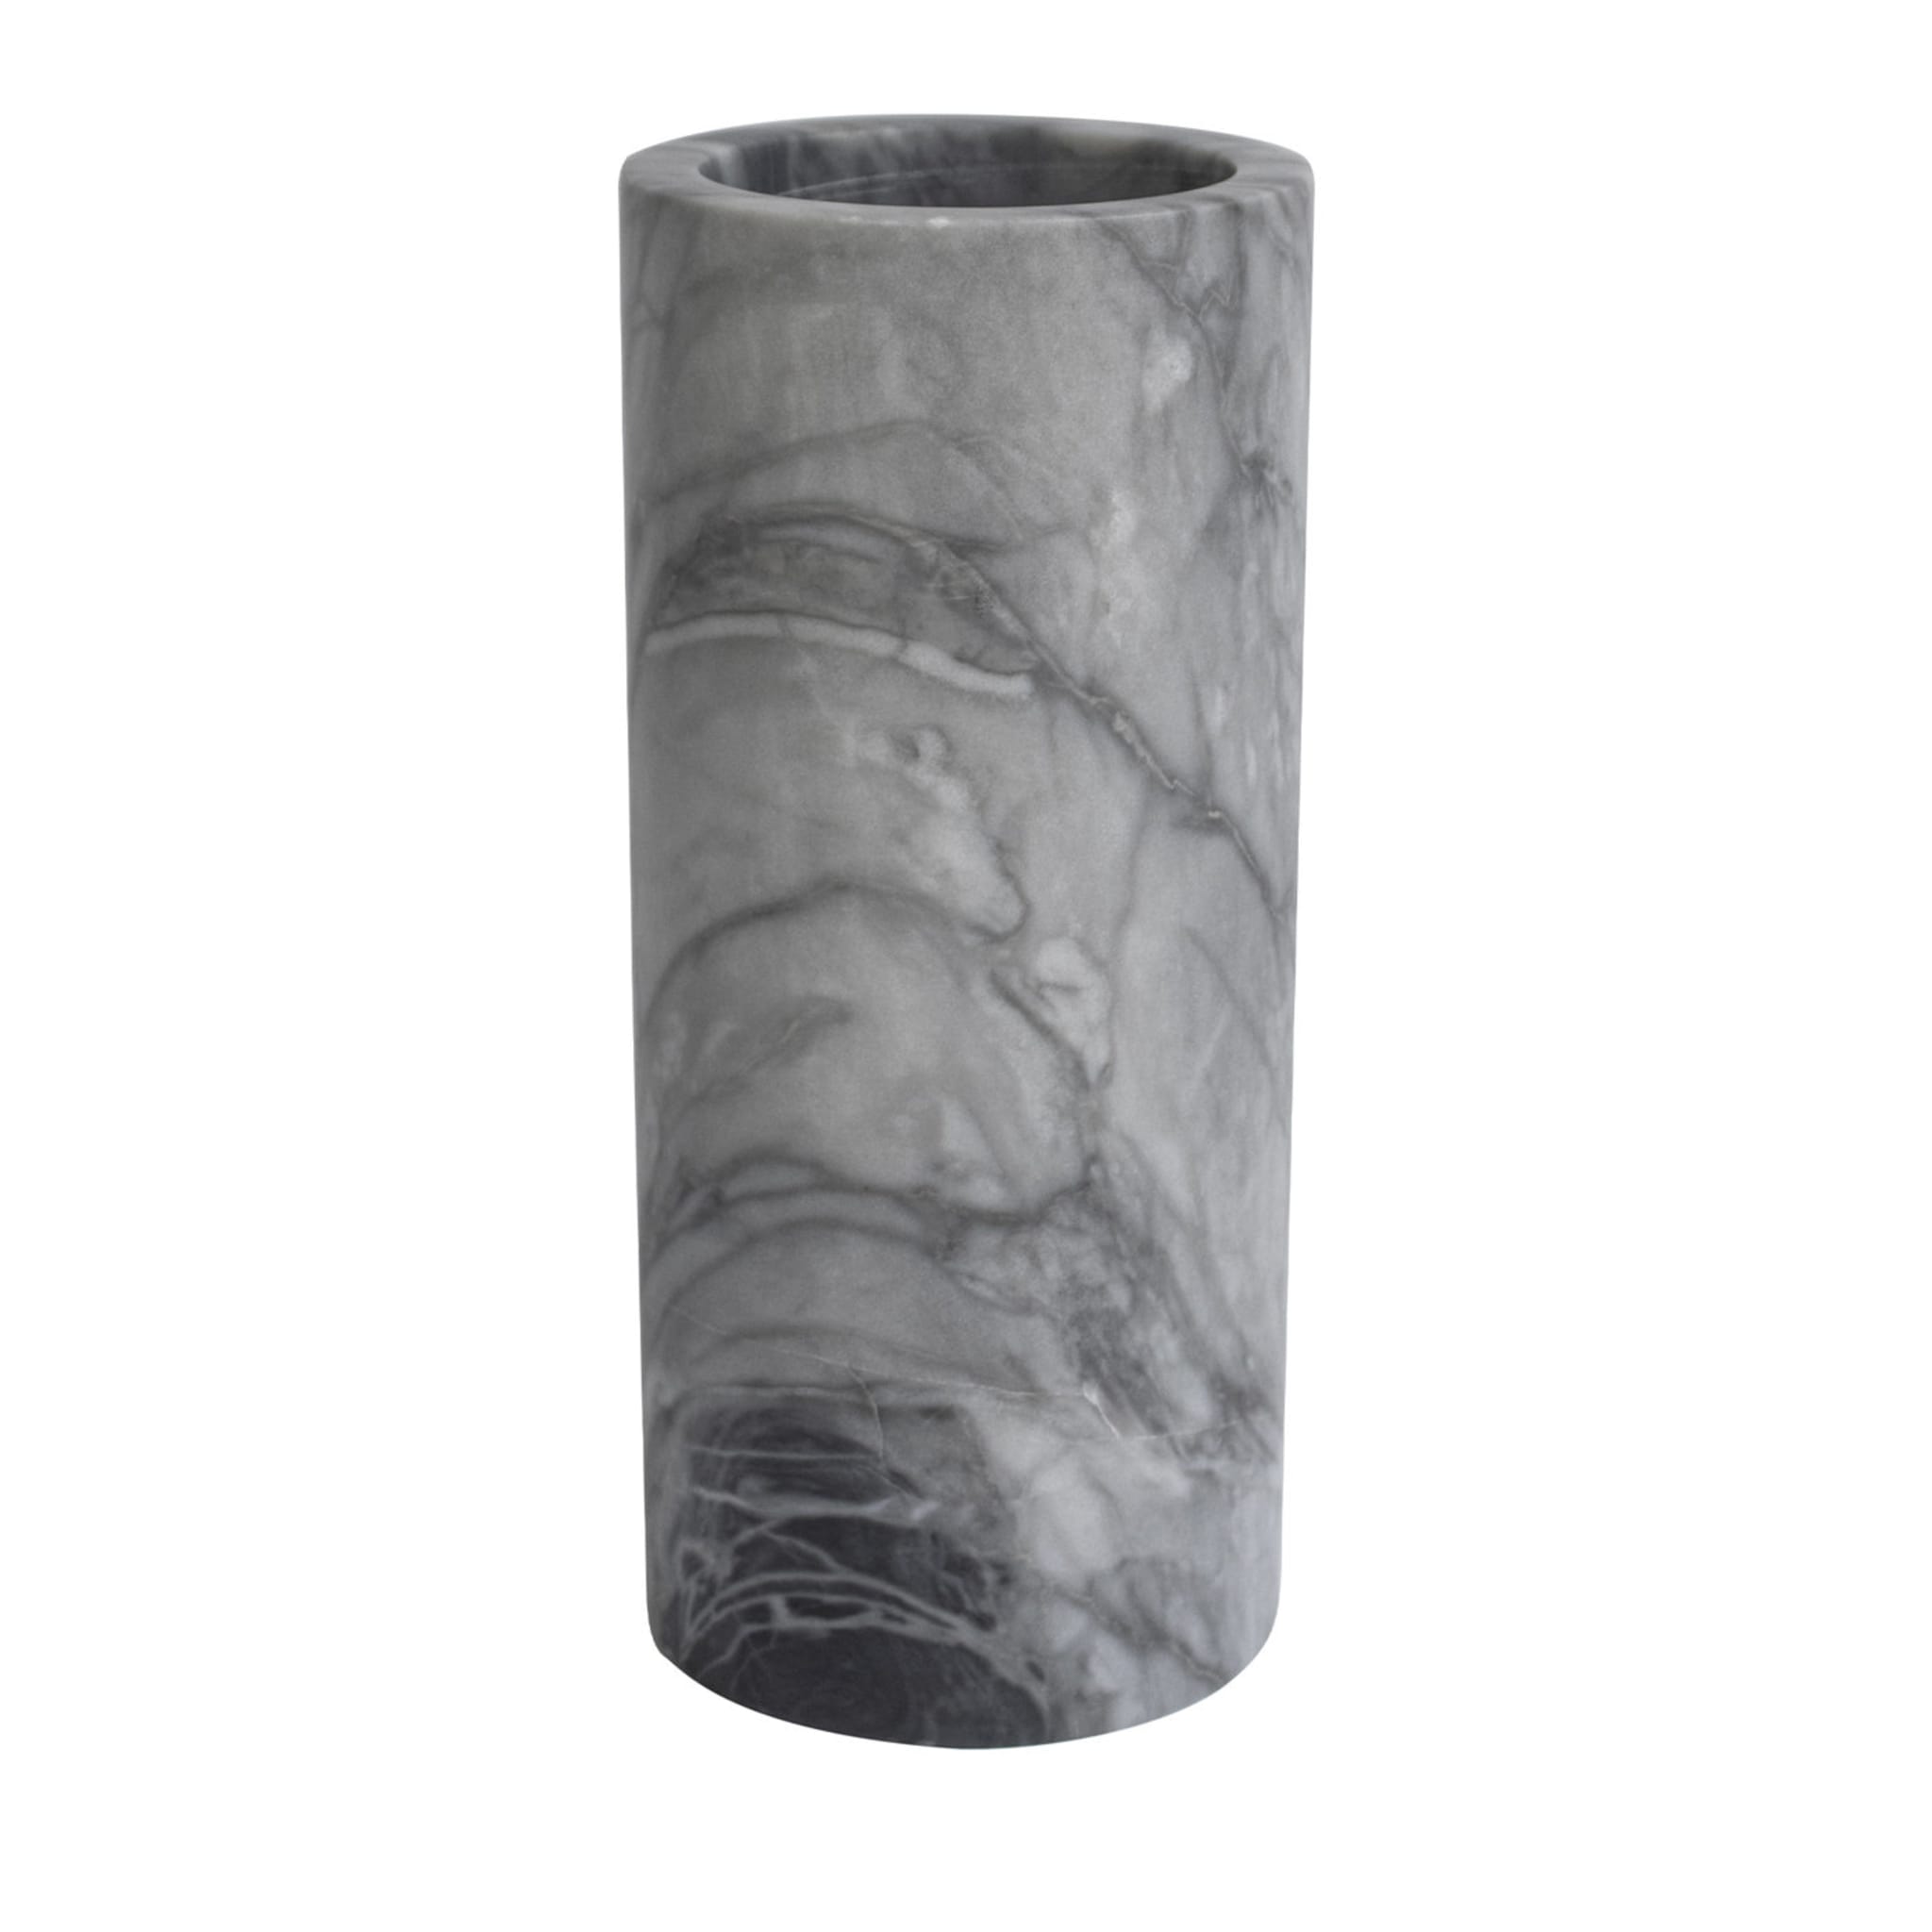 Zylindrische Vase aus grauem Bardiglio-Marmor - Hauptansicht